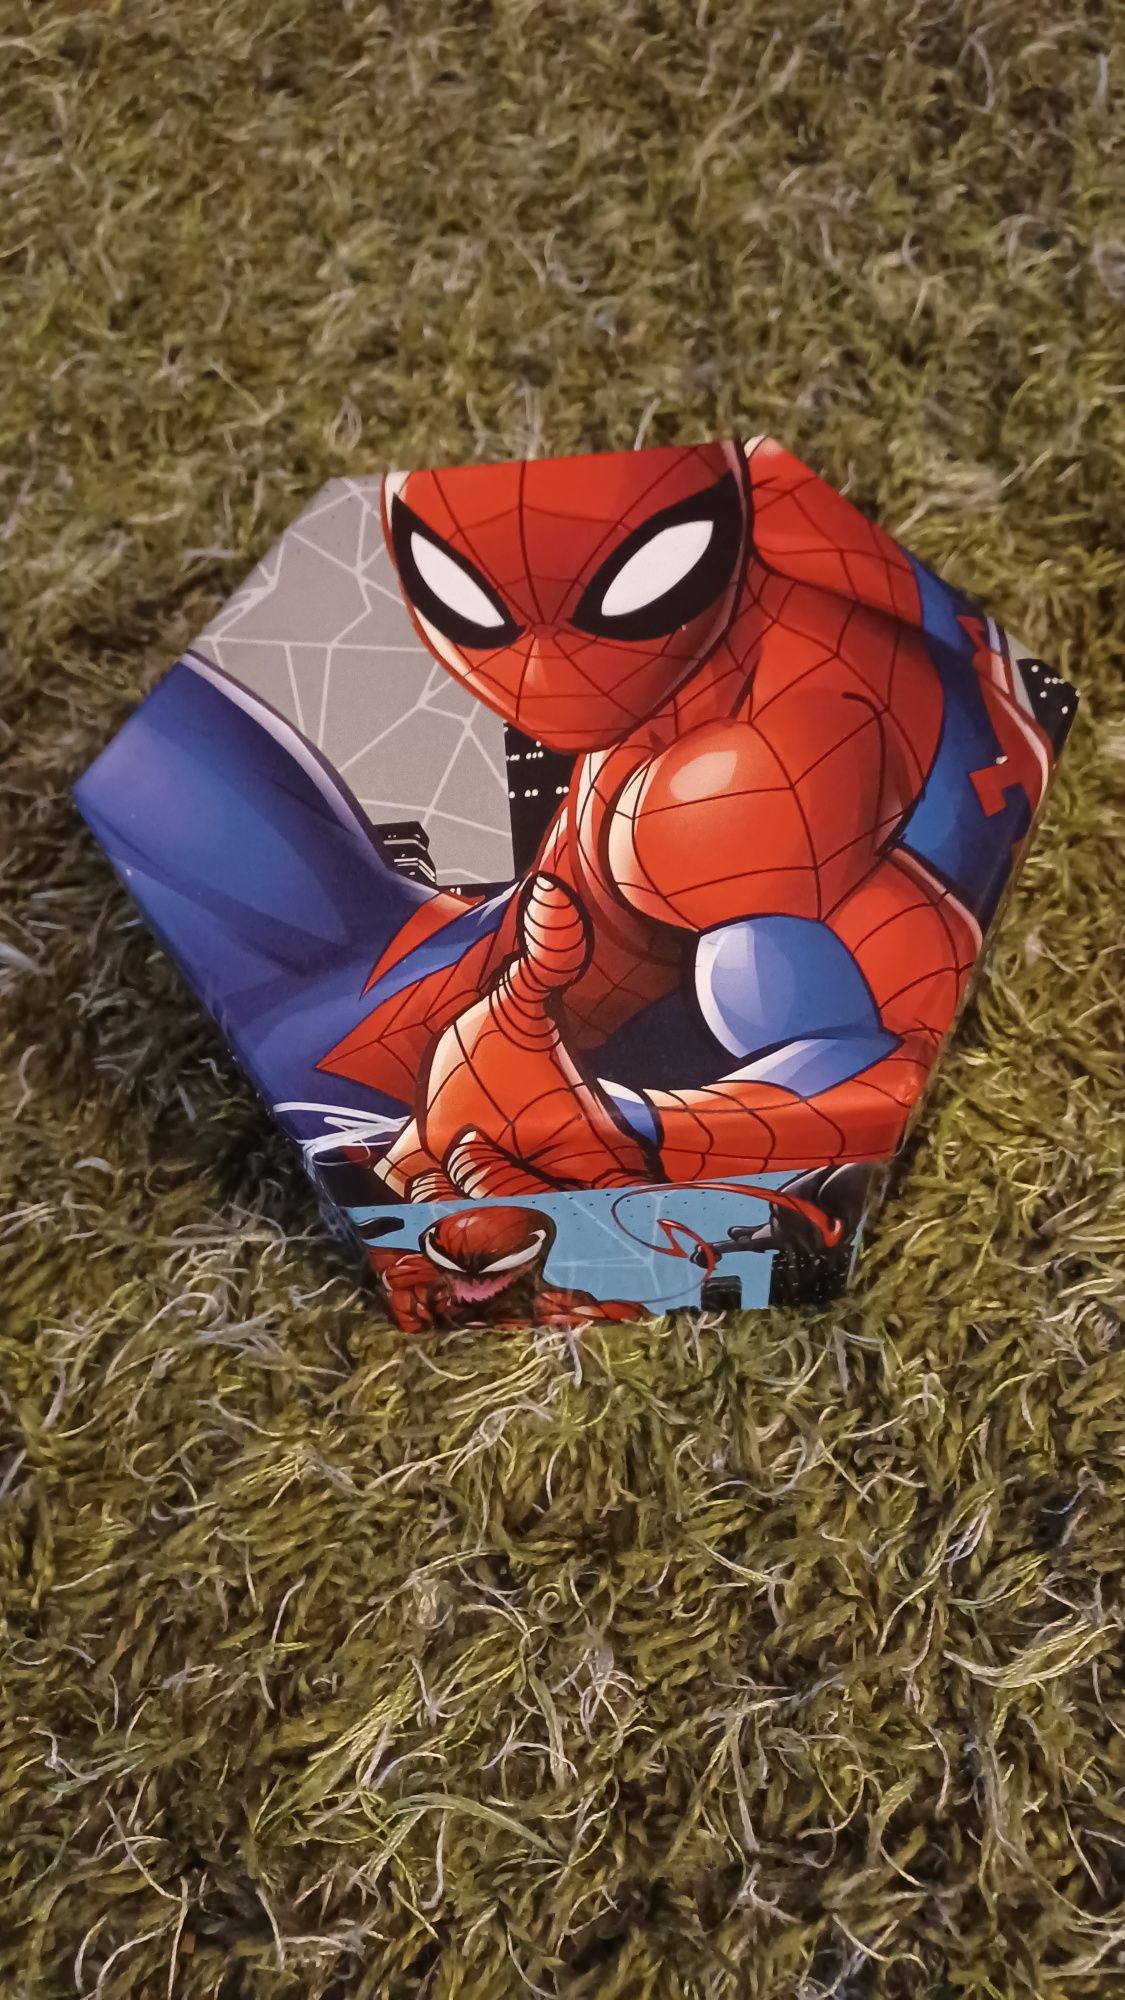 Zestaw artystyczny Spiderman (kredki,pisaki,farby)